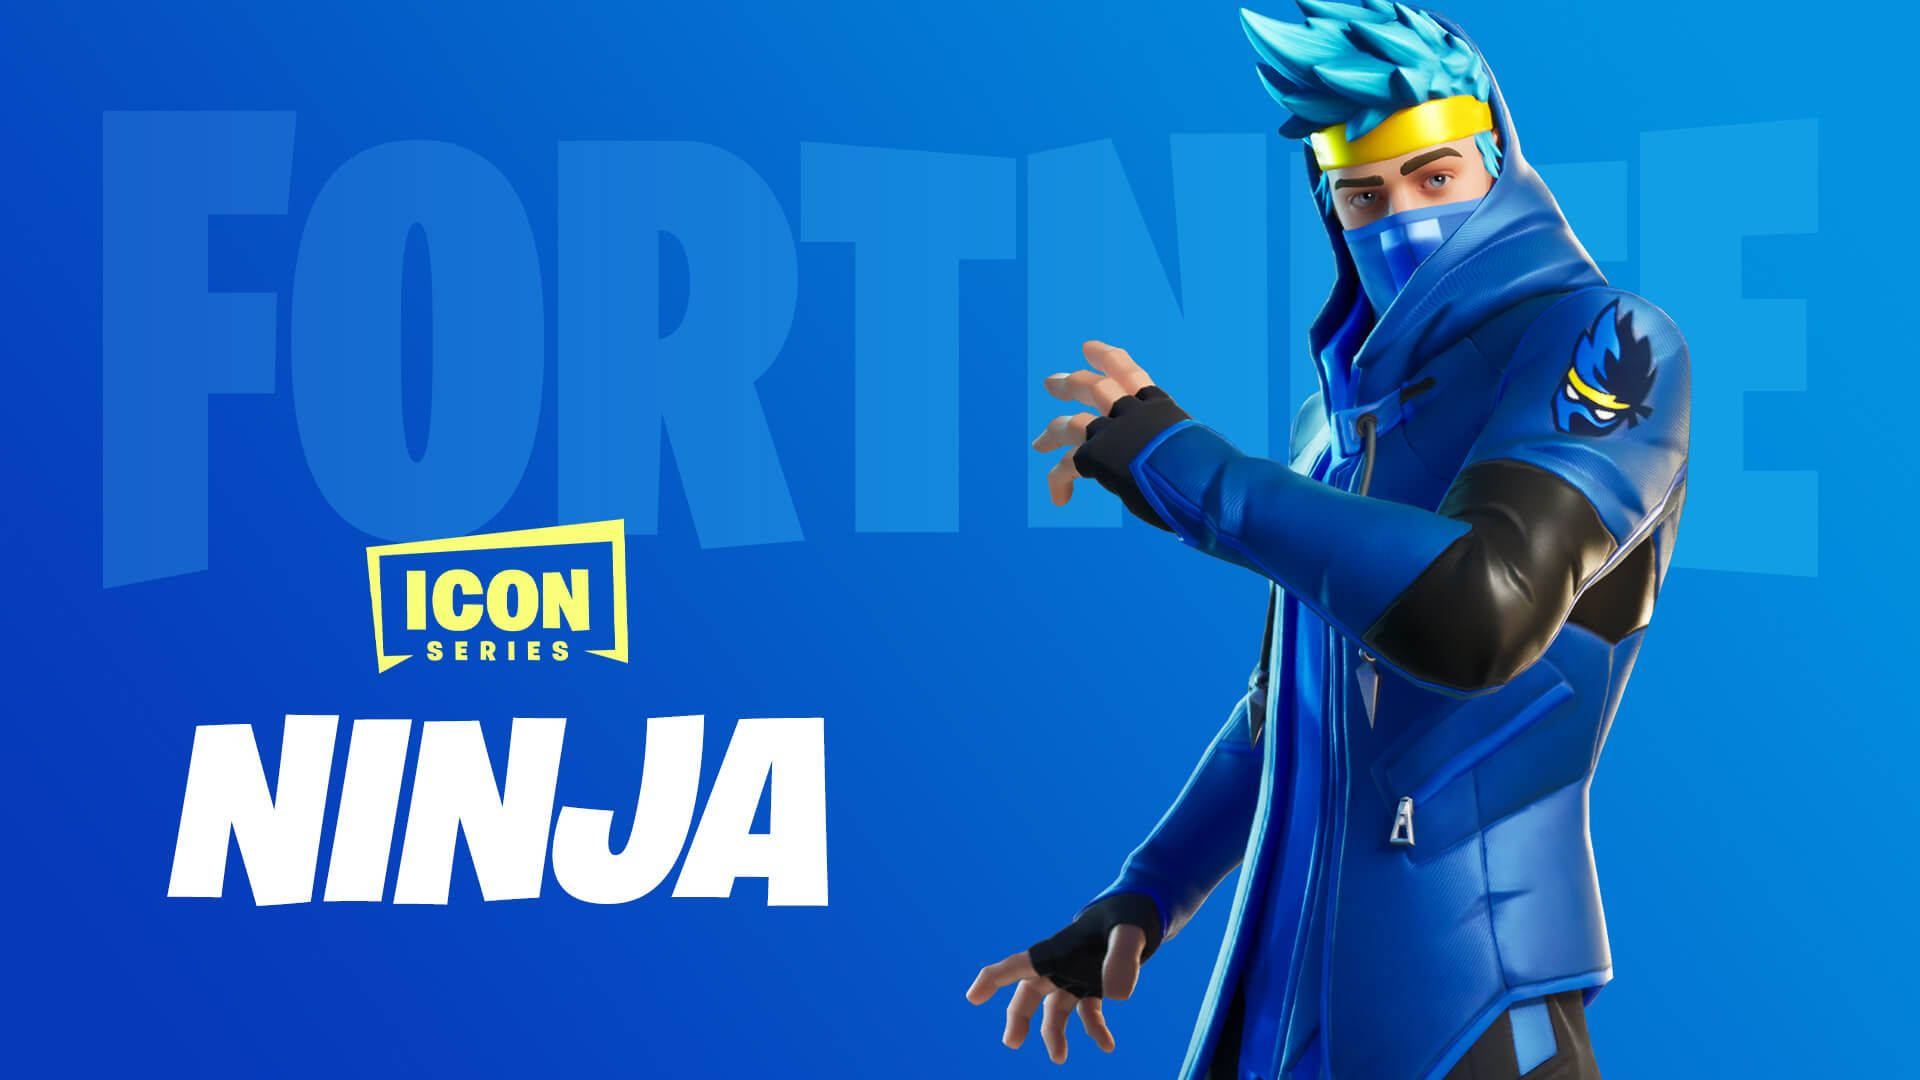 Ninja Fortnite Official Avatar Background